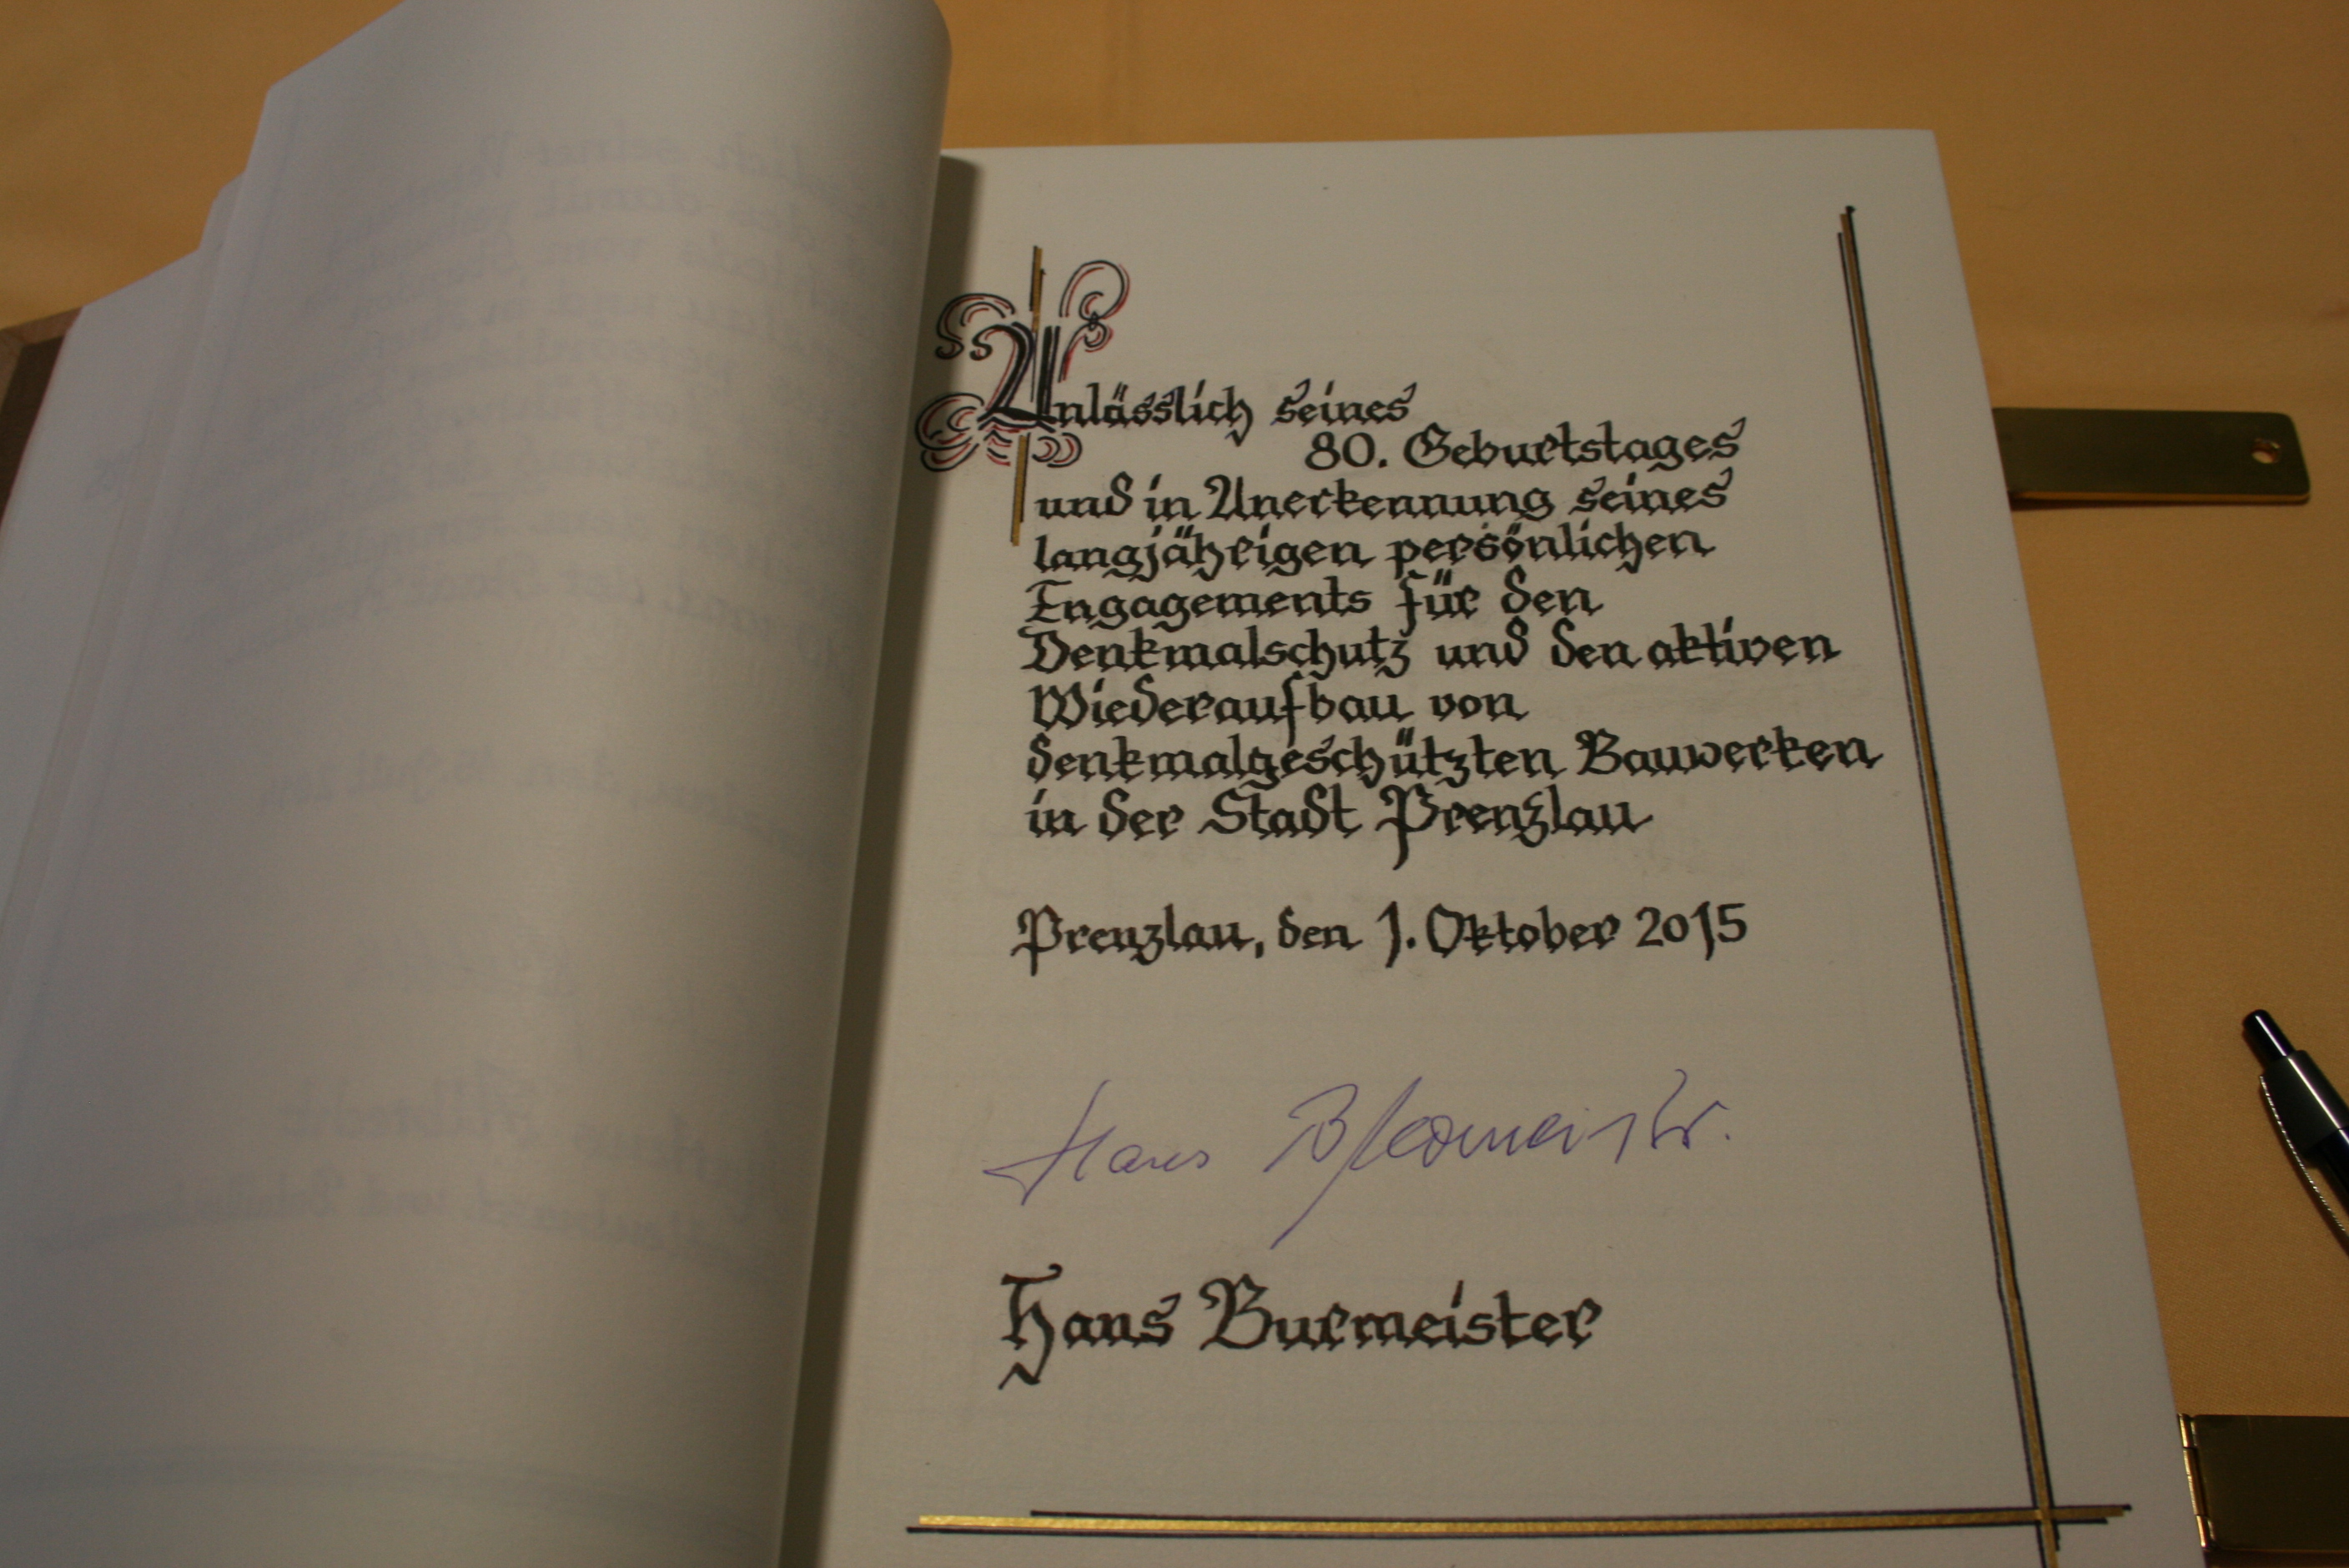 Die Seite im Goldenen Buch der Stadt Prenzlau für Hans Burmeister. (Foto: Anett Hilpert, Leiterin Büro Bürgermeister)